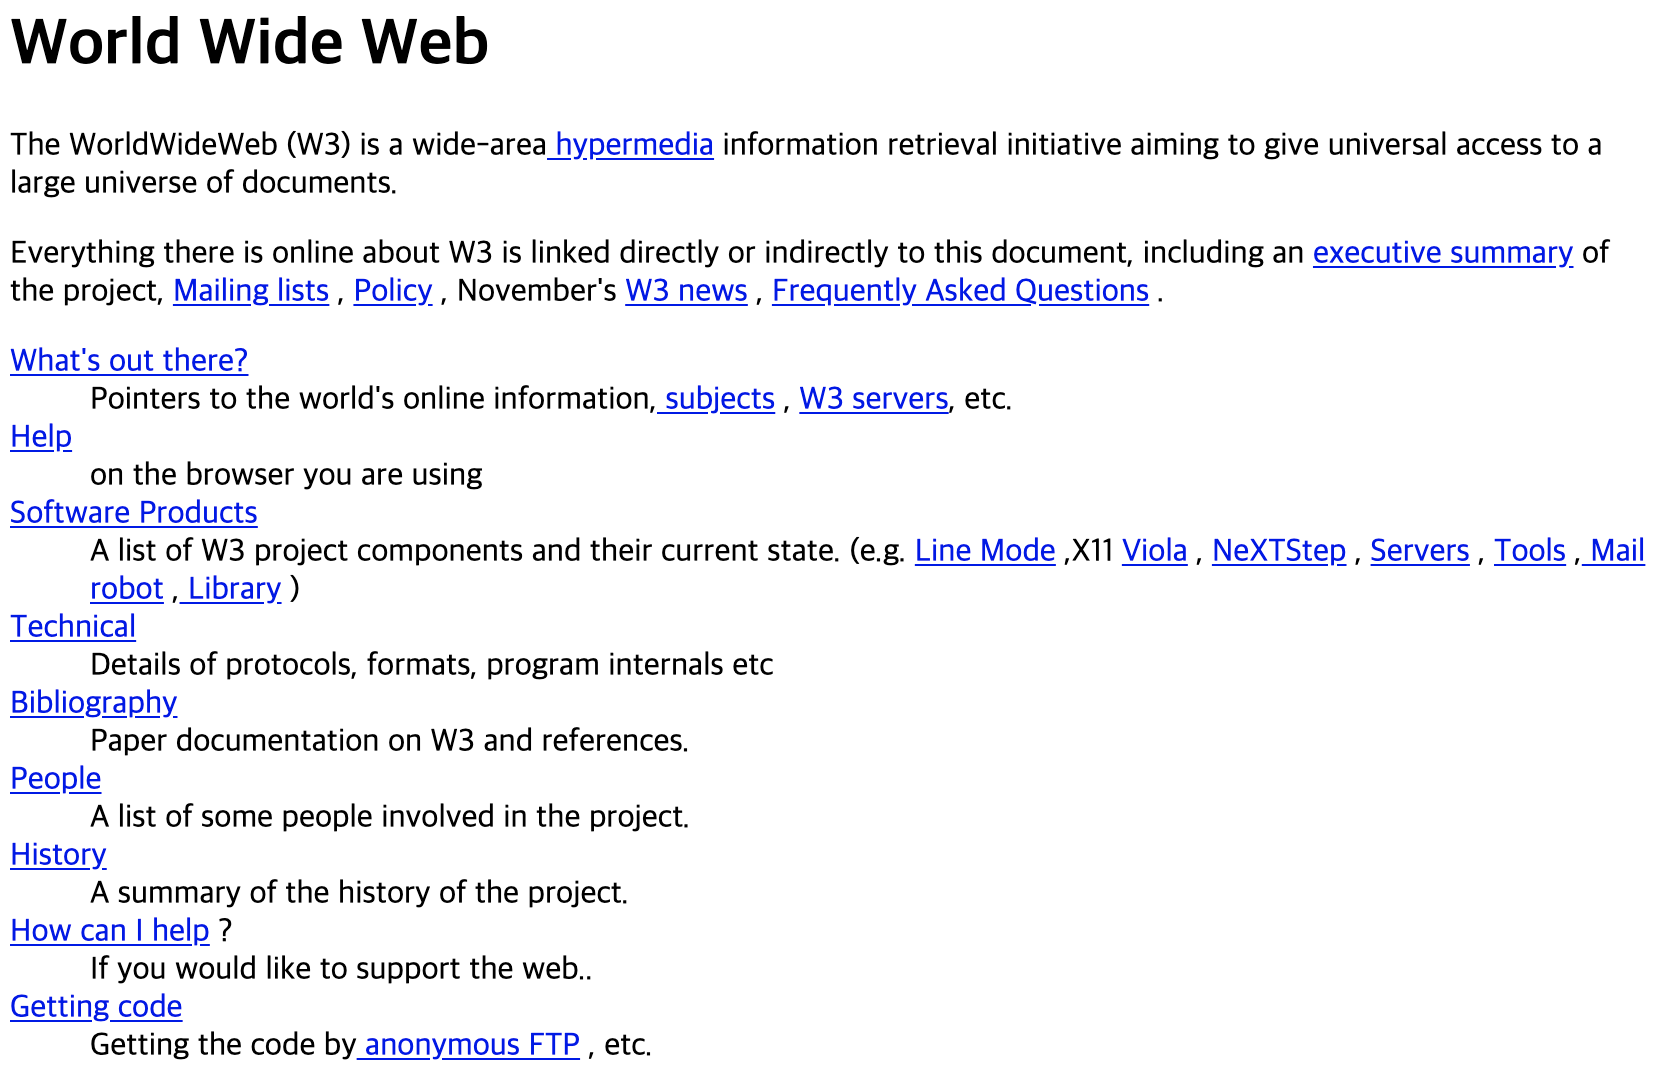 세계 최초의 웹 페이지